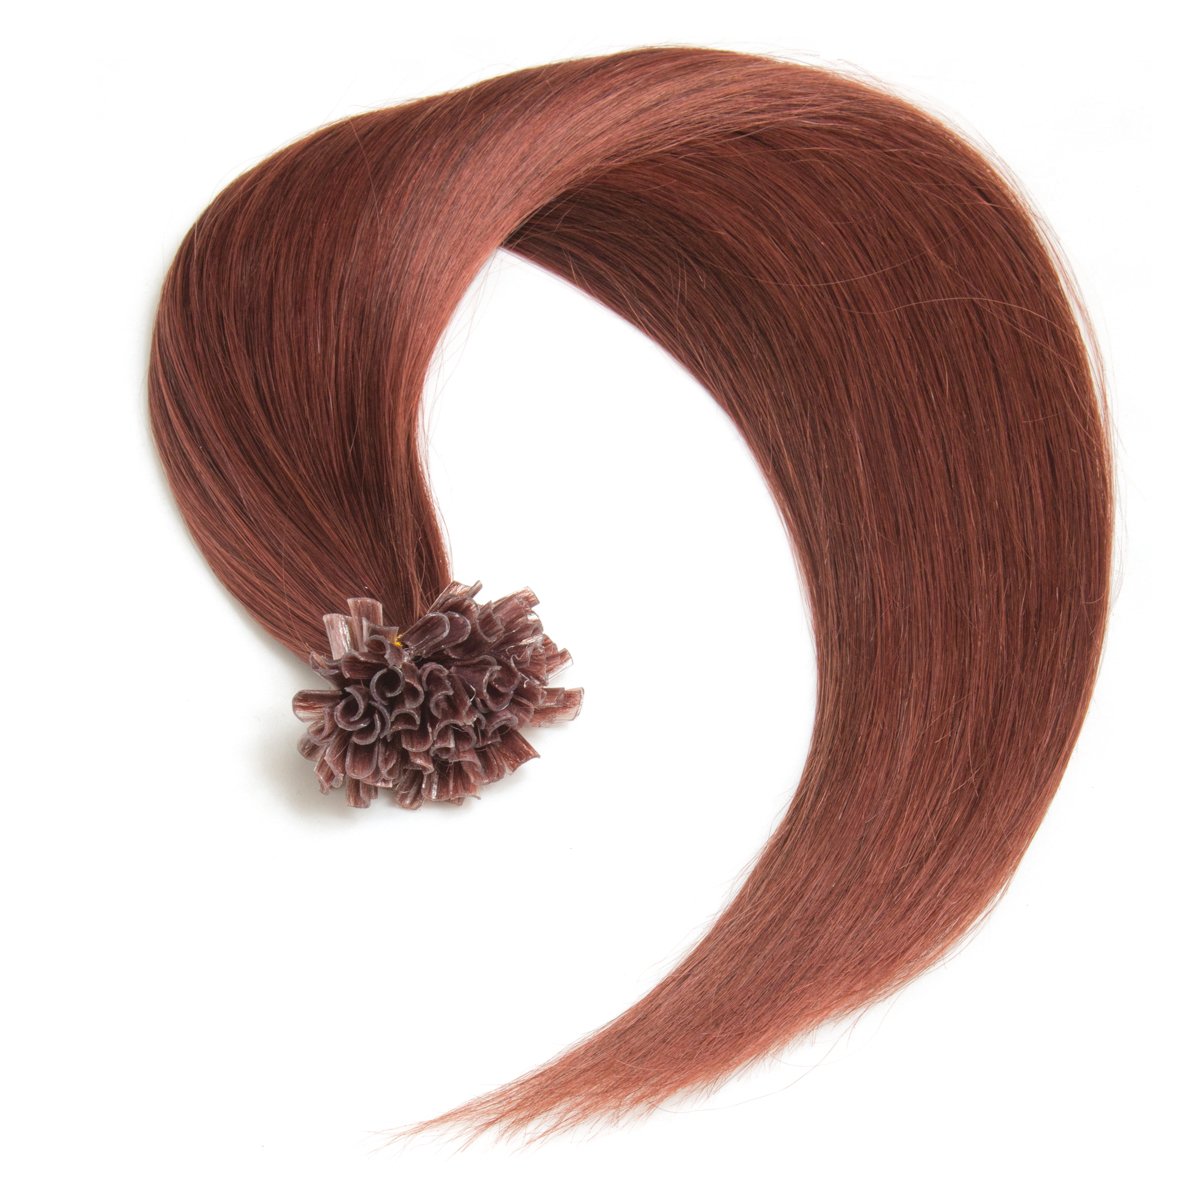 Kastanien-Farbige Keratin Bonding Extensions aus 100% Remy Echthaar/Human Hair 200 0,5g 50cm Glatte Strähnen - U-Tip als Haarverlängerung und Haarverdichtung - Farbe: #33 Kastanie